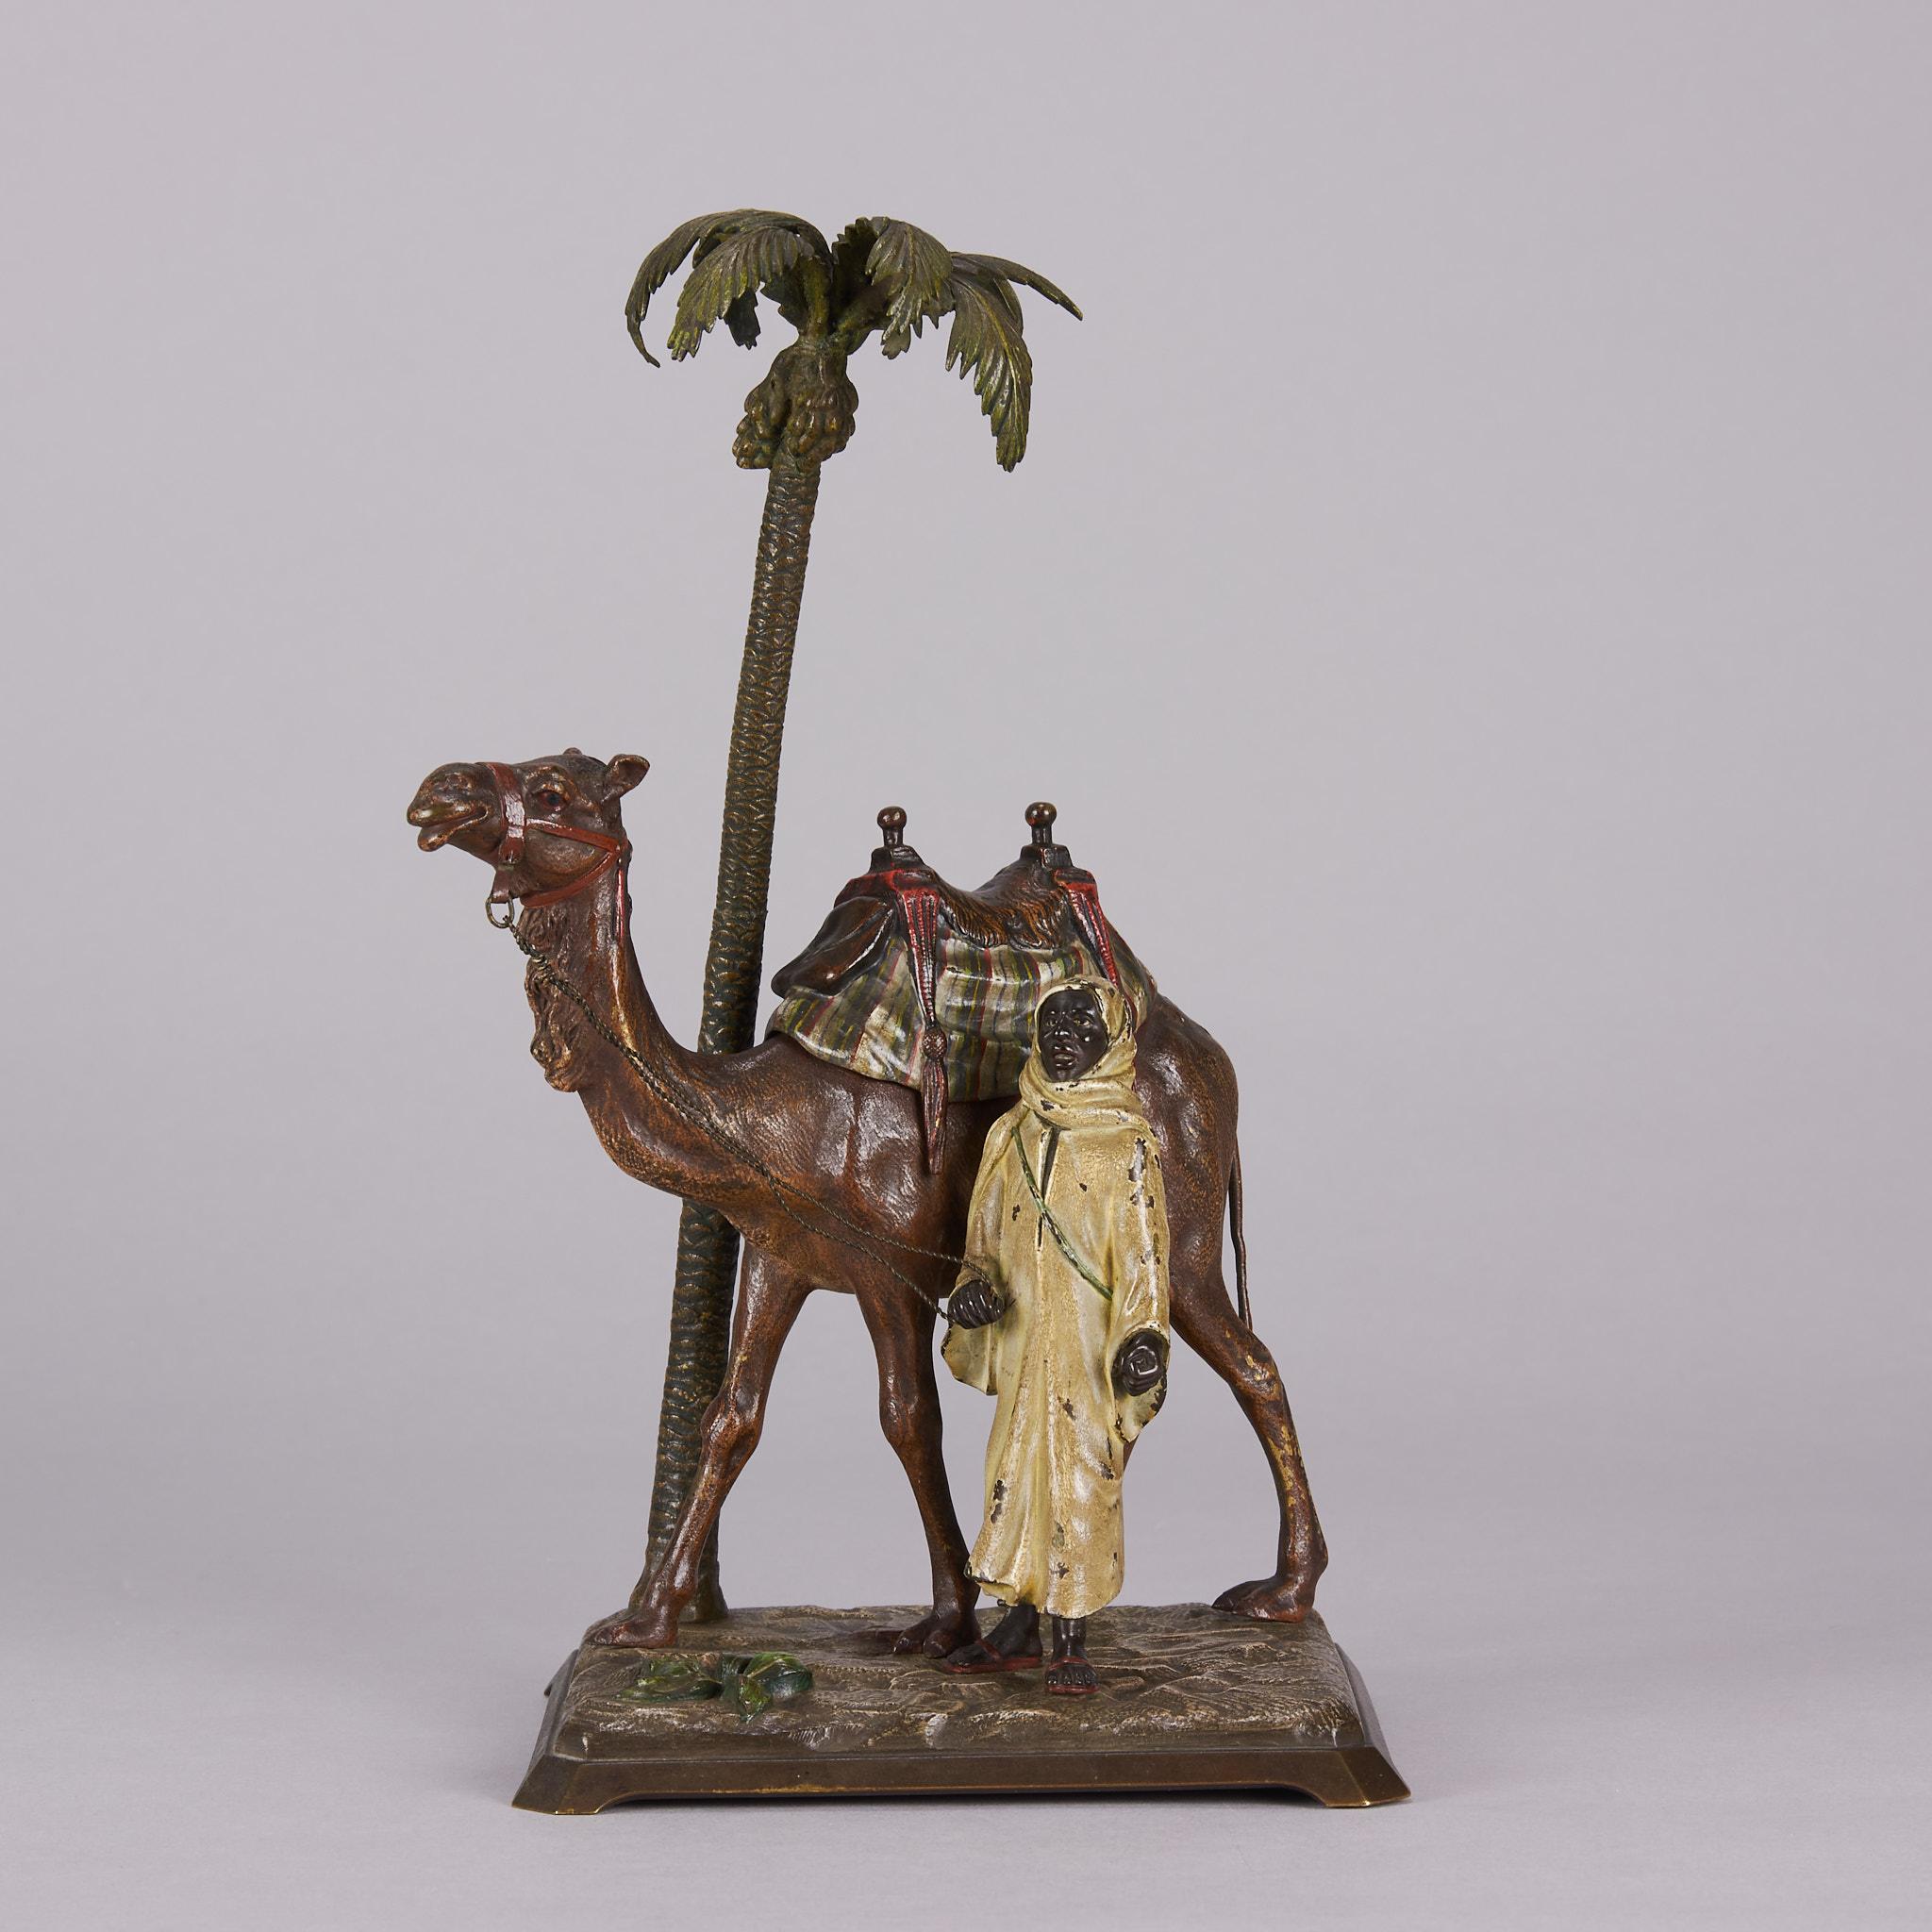 Magnifique groupe en bronze autrichien du début du XXe siècle représentant un homme bédouin debout à côté de son chameau, à côté d'un palmier, sur une base naturaliste surélevée. La selle du chameau s'ouvre pour révéler un encrier avec une fixation